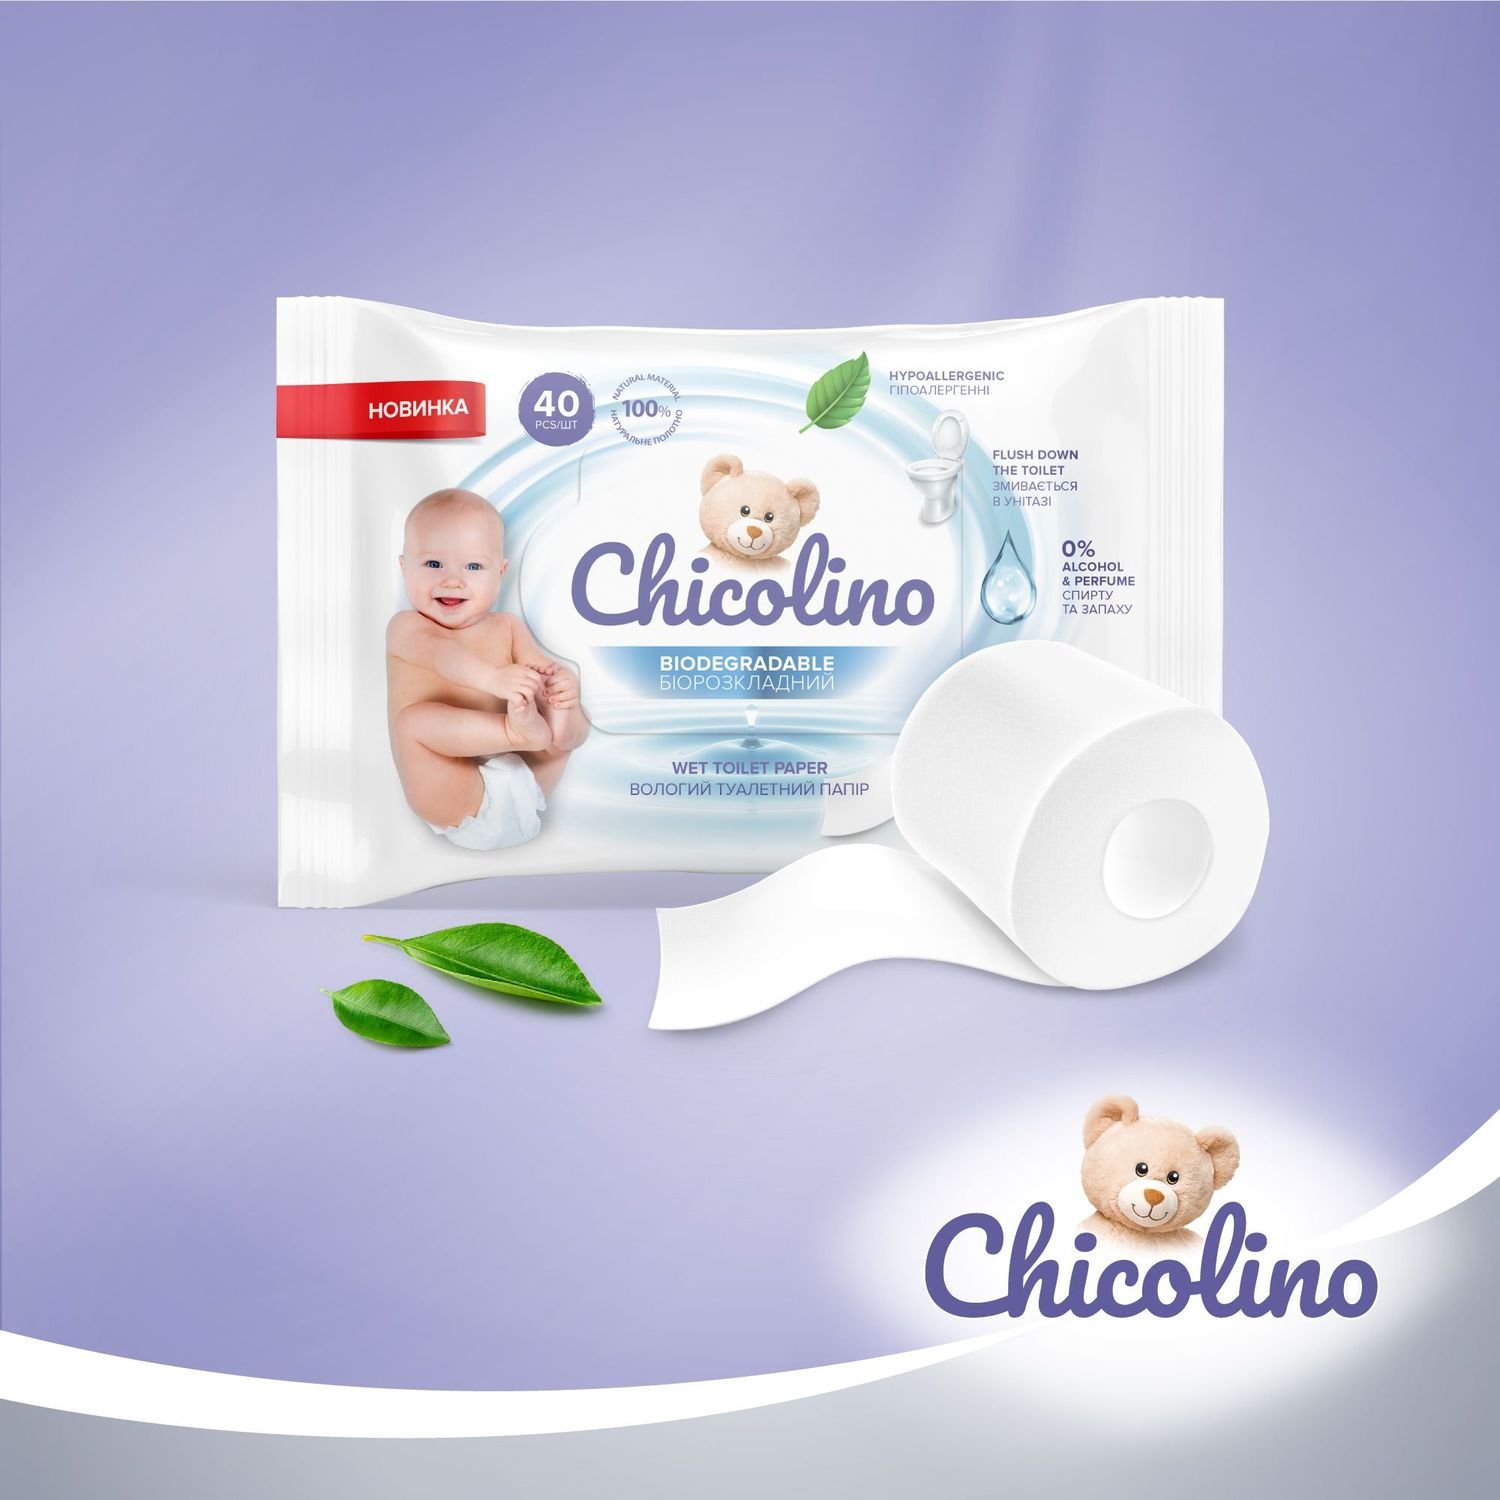 Набор биоразлагаемой влажной туалетной бумаги Chicolino для детей и взрослых, 640 шт. (16 уп. по 40 шт.) - фото 7